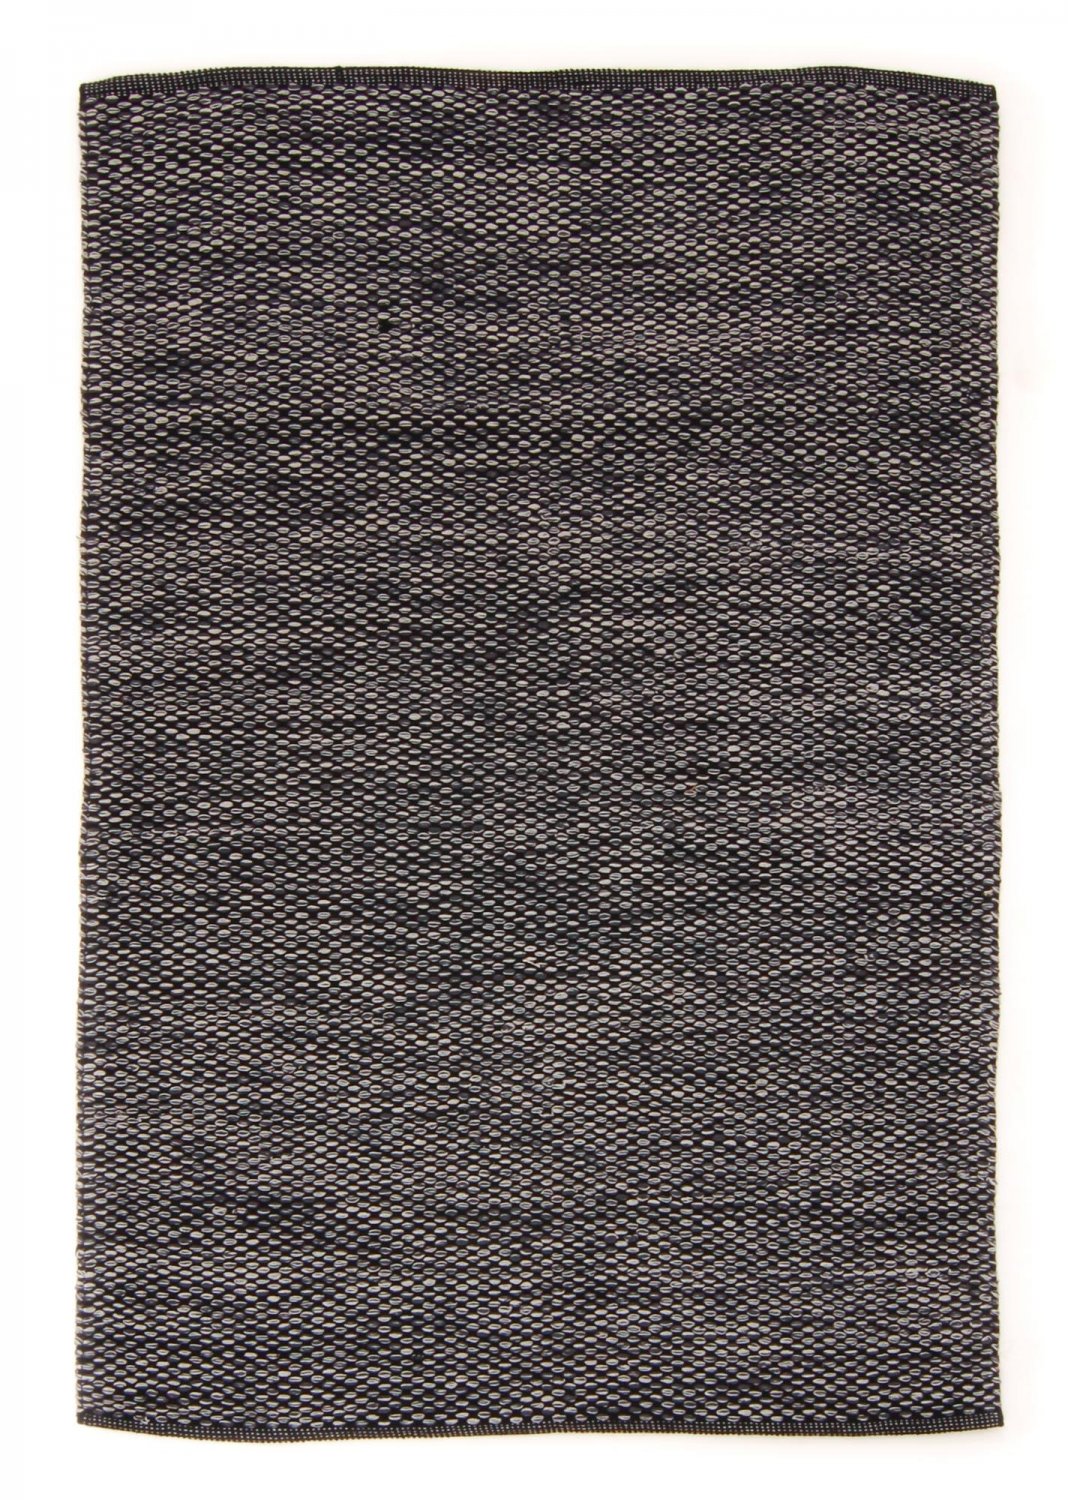 Filleryer - Tuva (sort/grå)